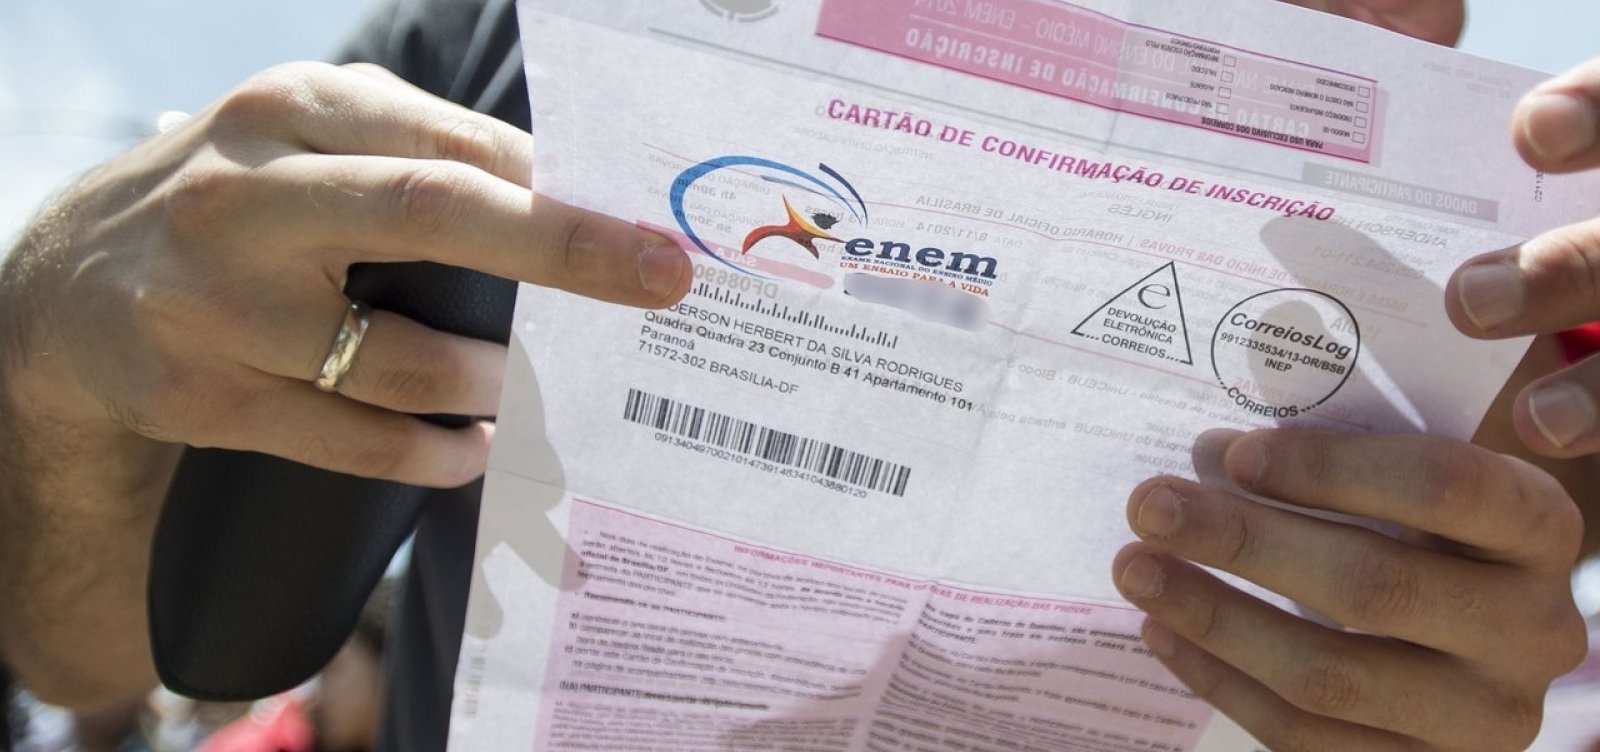 Mais quatro universidades portuguesas vão usar Enem como seleção de estudantes